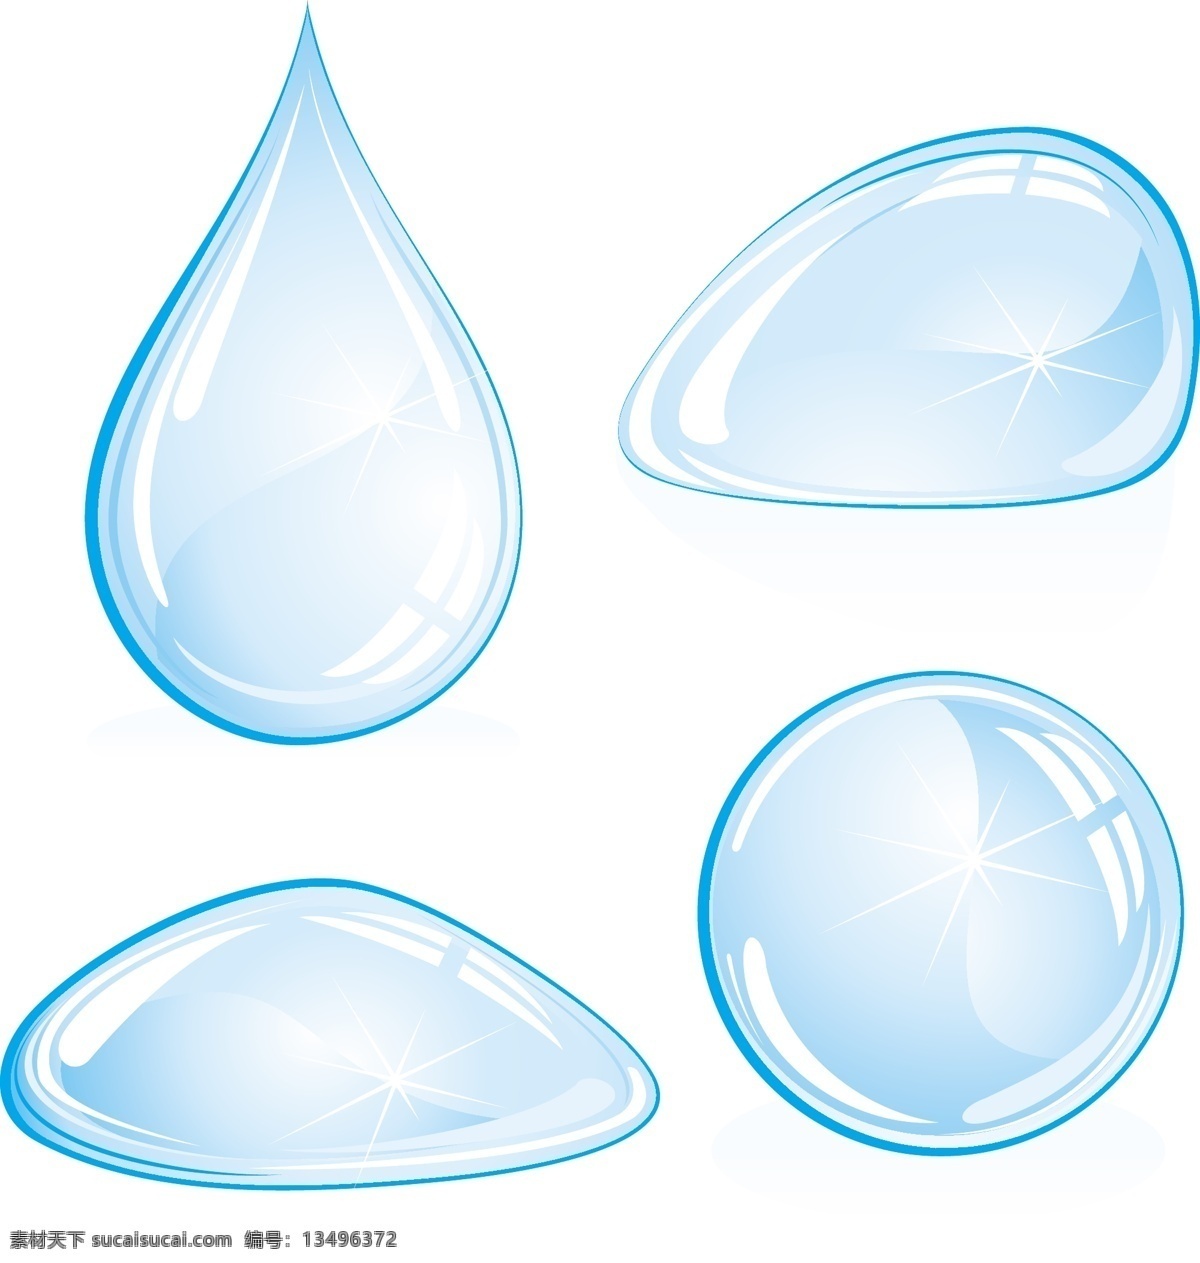 水滴矢量素材 水滴 矢量素材 水滴矢量 矢量 蓝色水滴 飞溅水滴 水